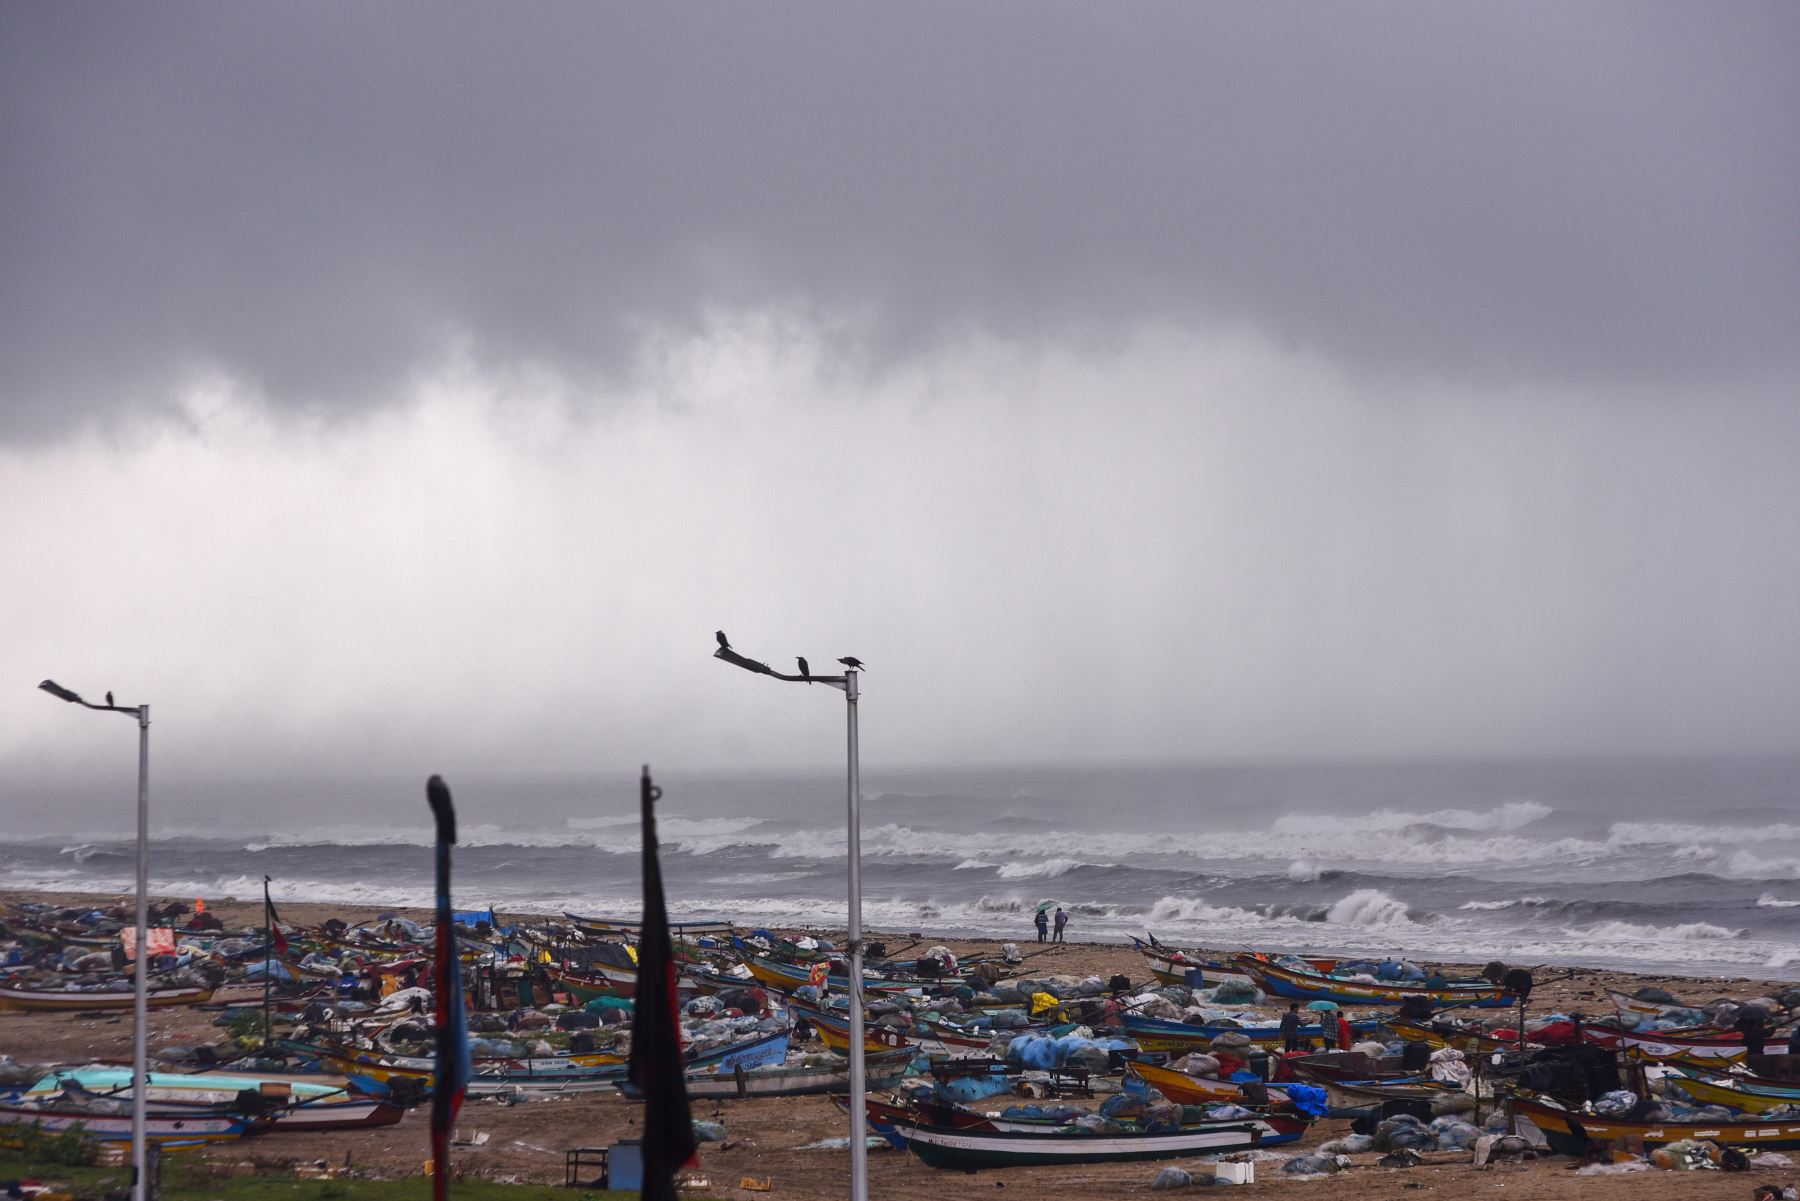 Los barcos de pesca se ven anclados mientras oscuras nubes de tormenta cubren el cielo durante el ciclón Michaug, en Foreshore Estate Beach, en Chennai, India.
Foto: EFE